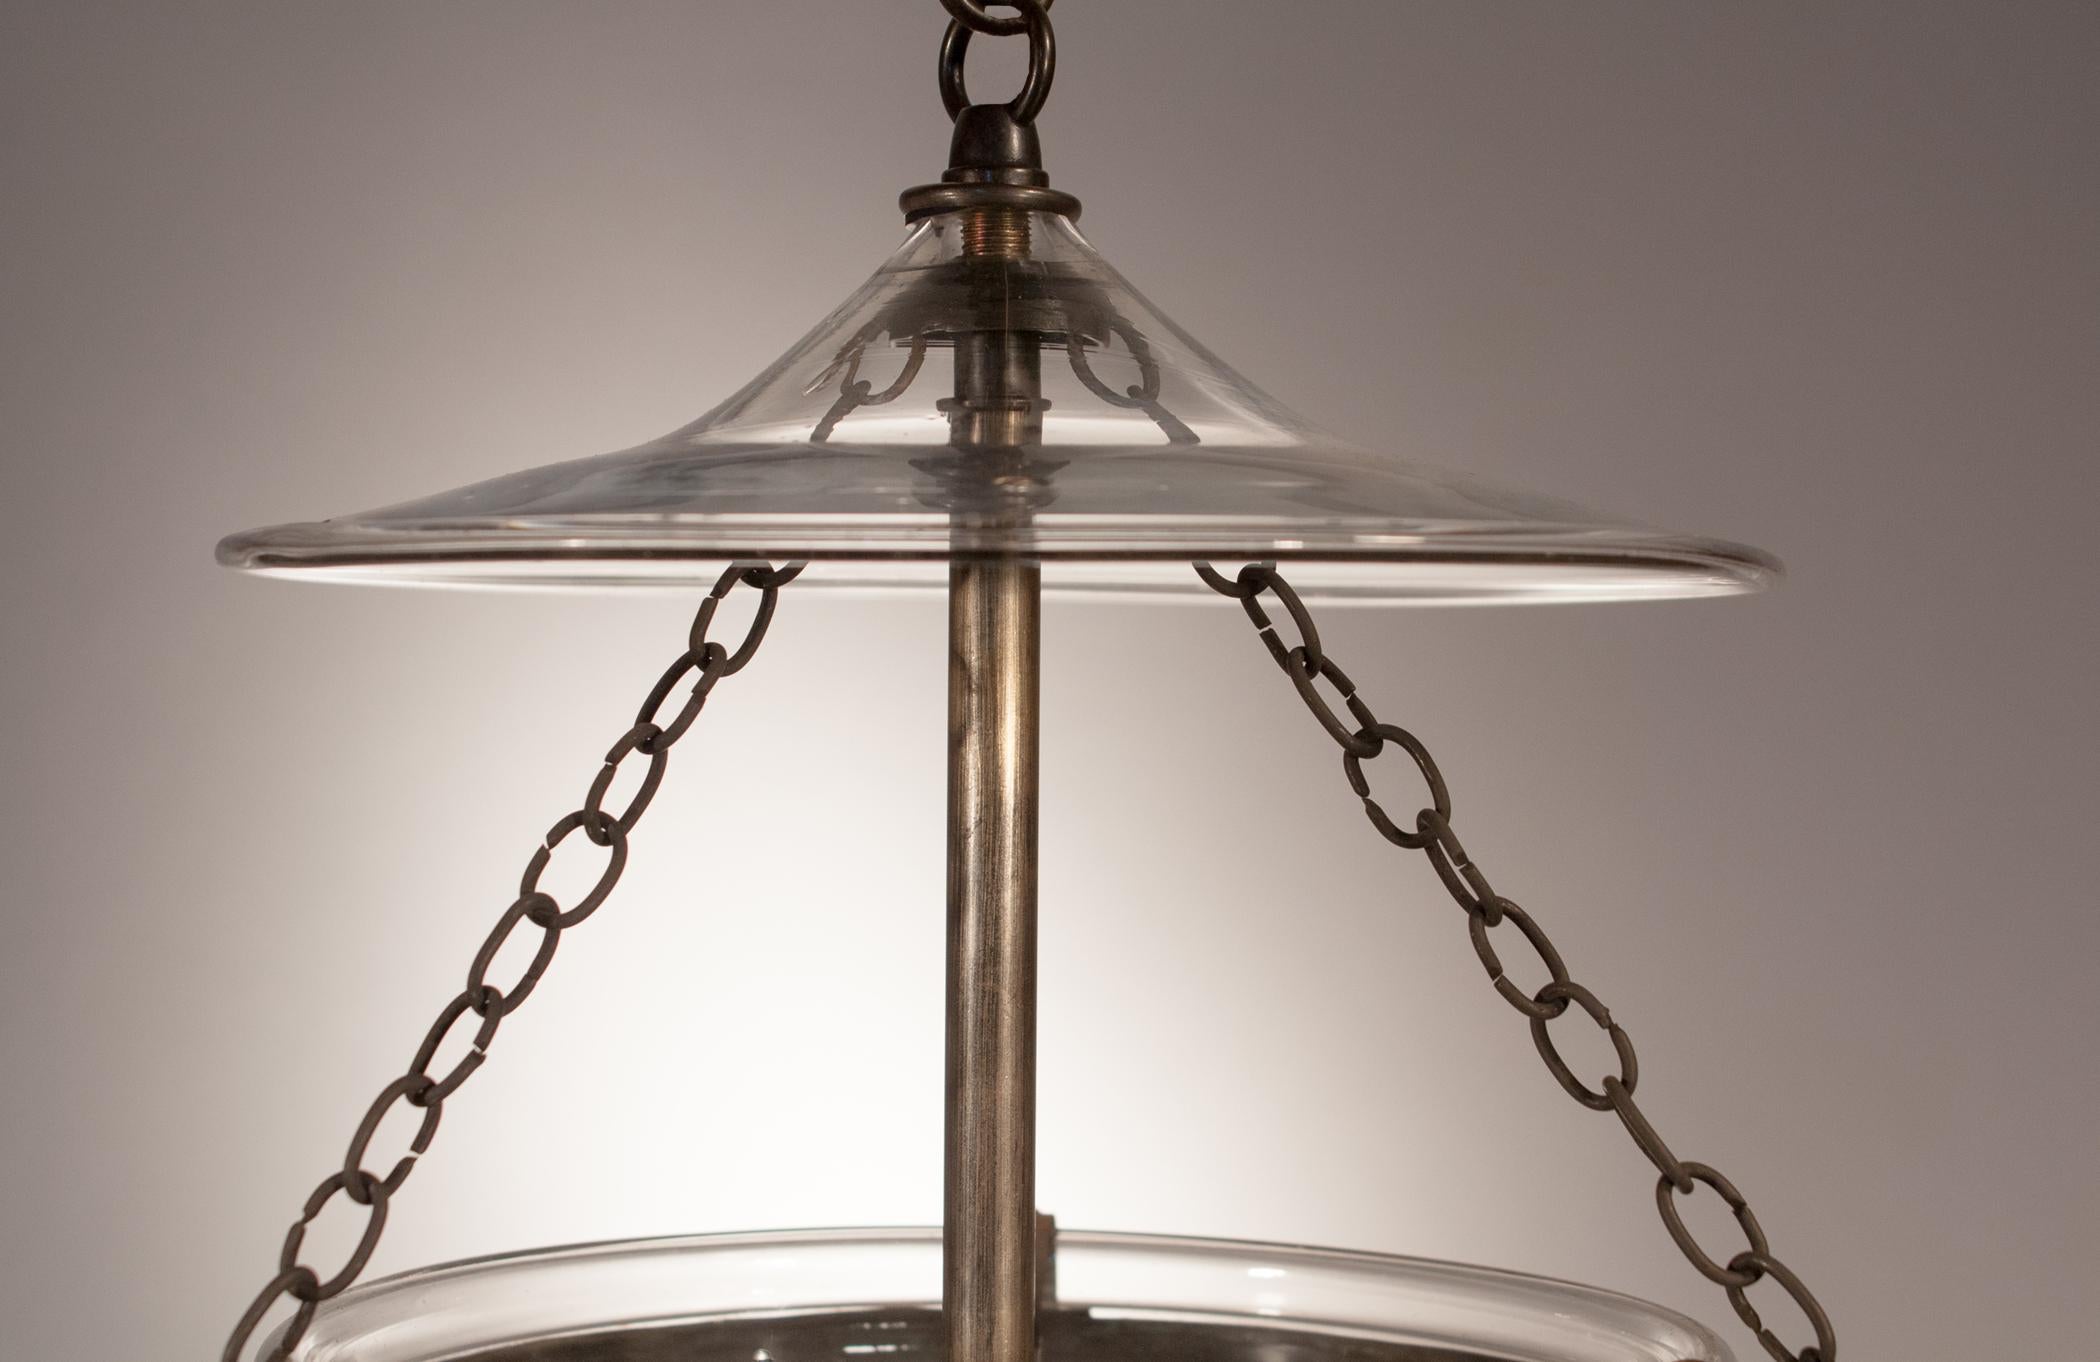  Petite Bell Jar Lantern with Etching (Radiert)